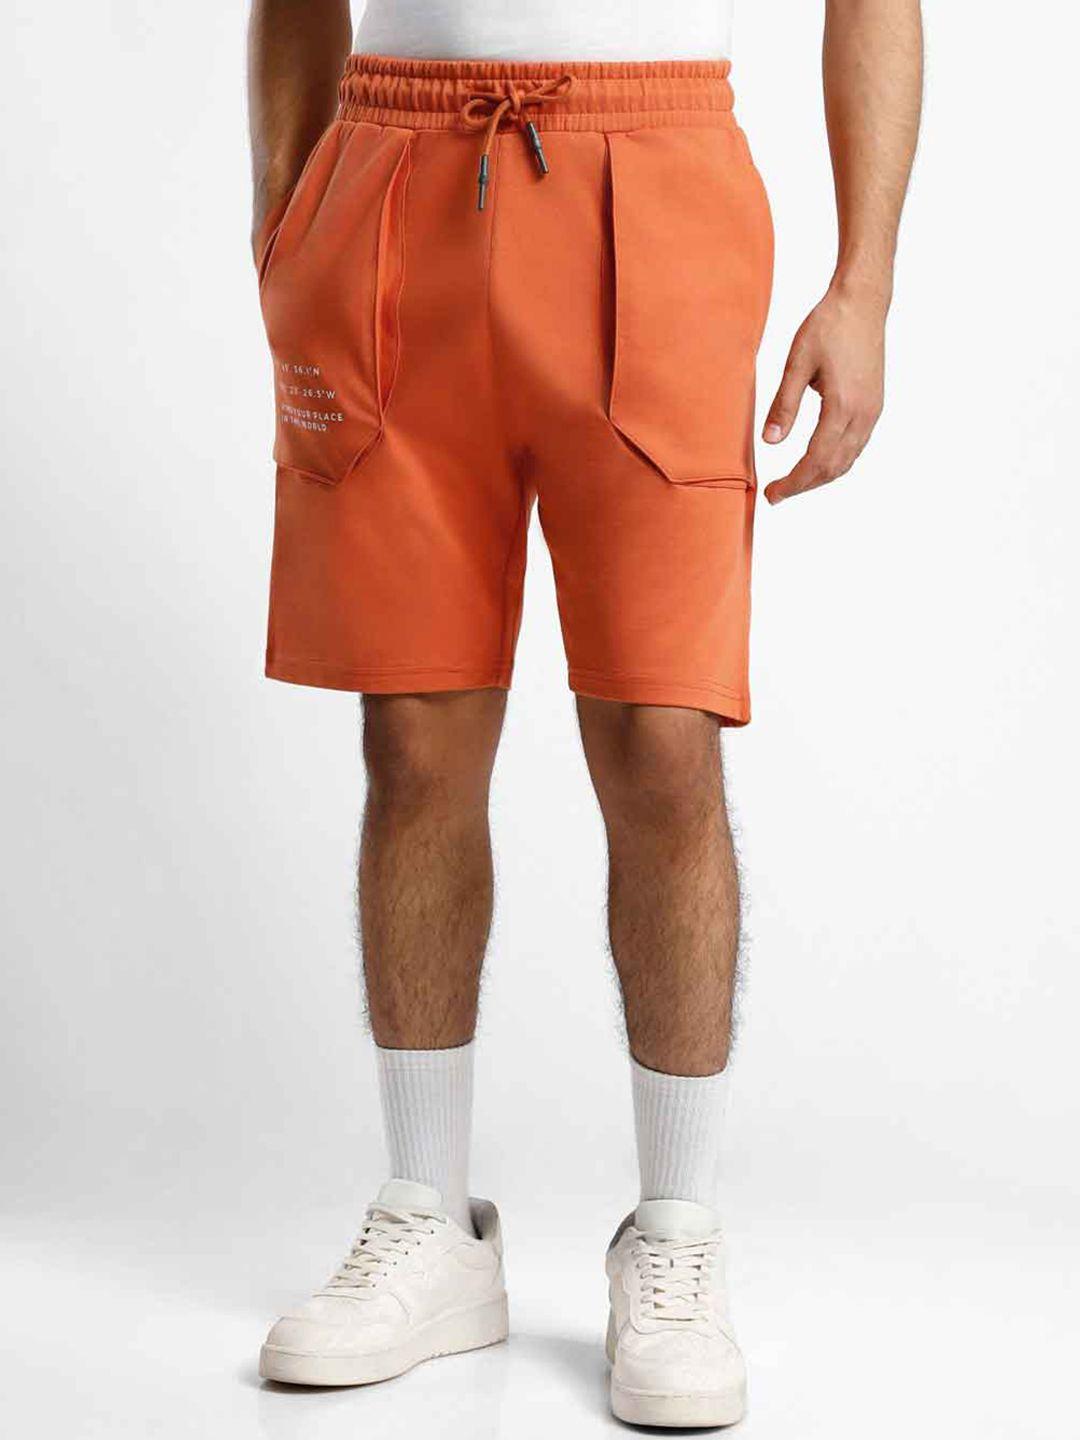 nobero men orange typography printed loose fit shorts